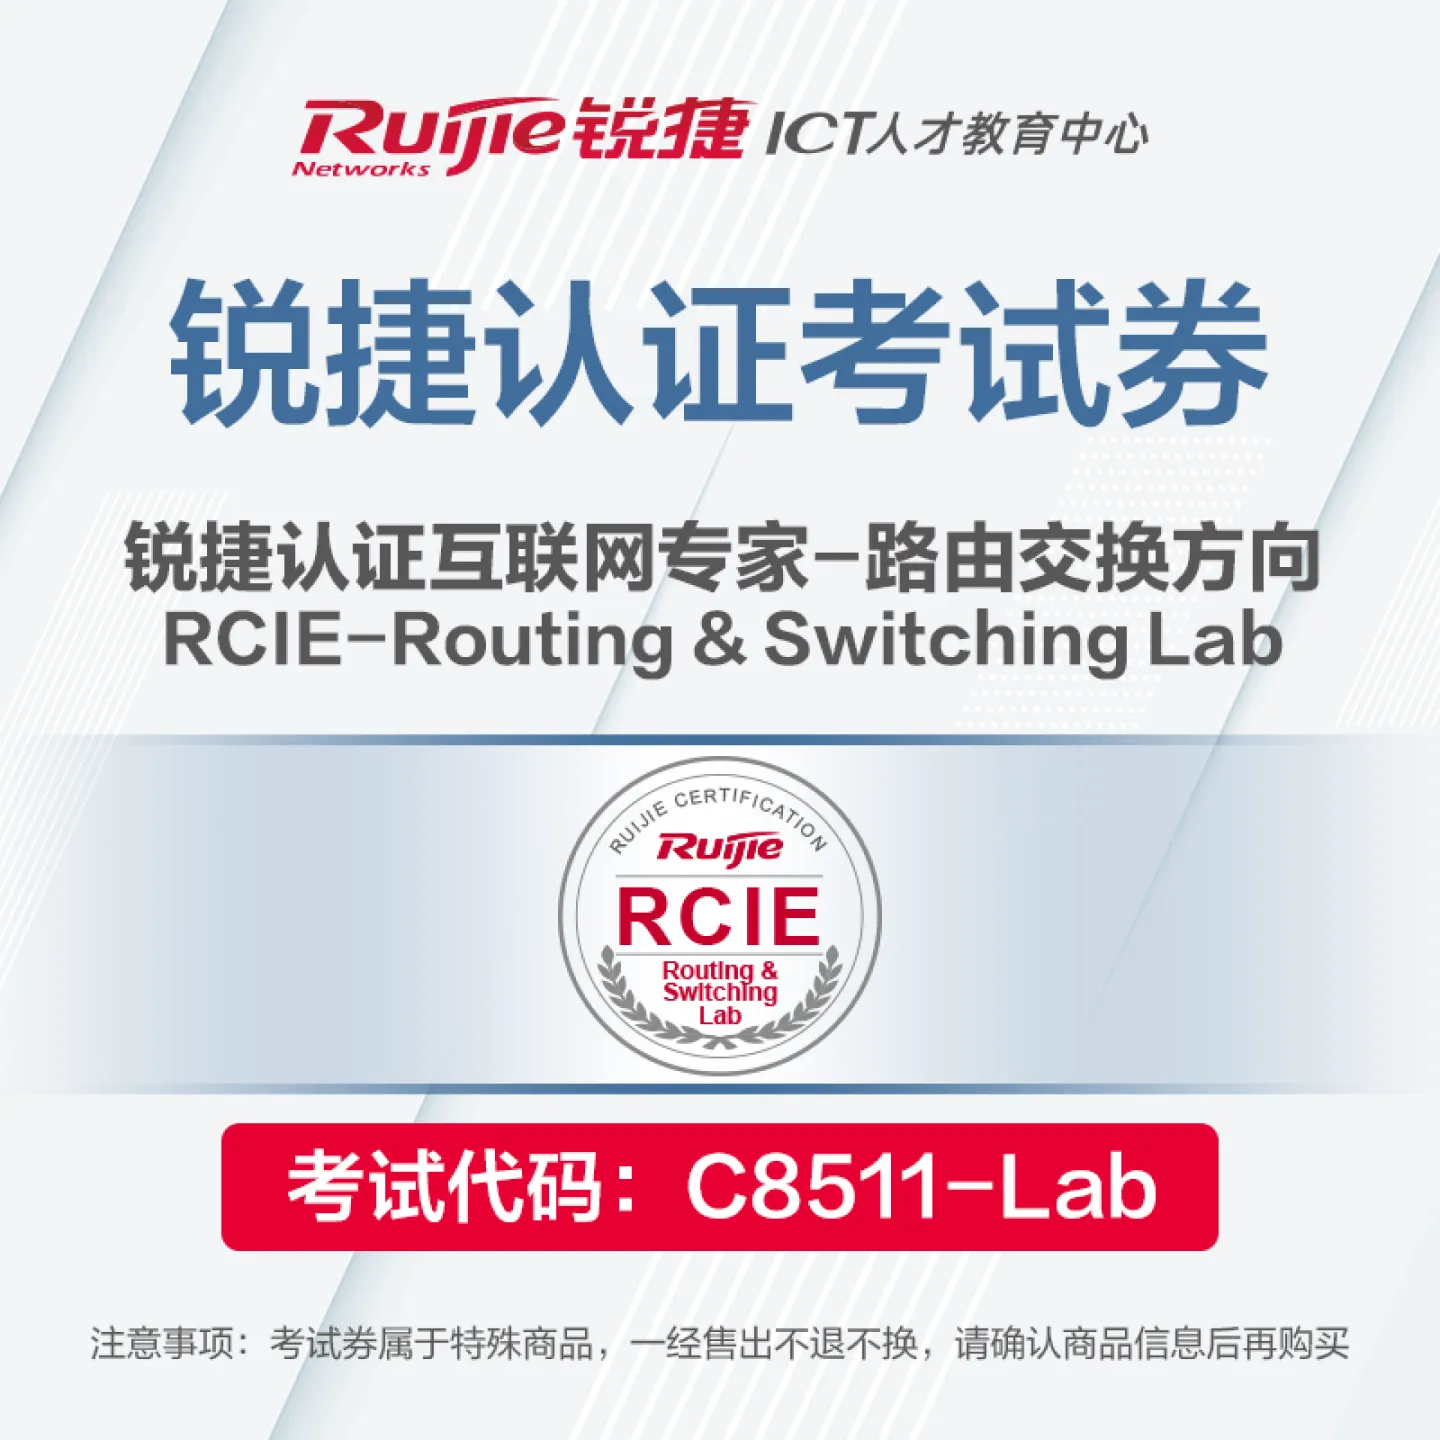 ��瀹�楠��搞��RCIE-Routing & Switching Lab